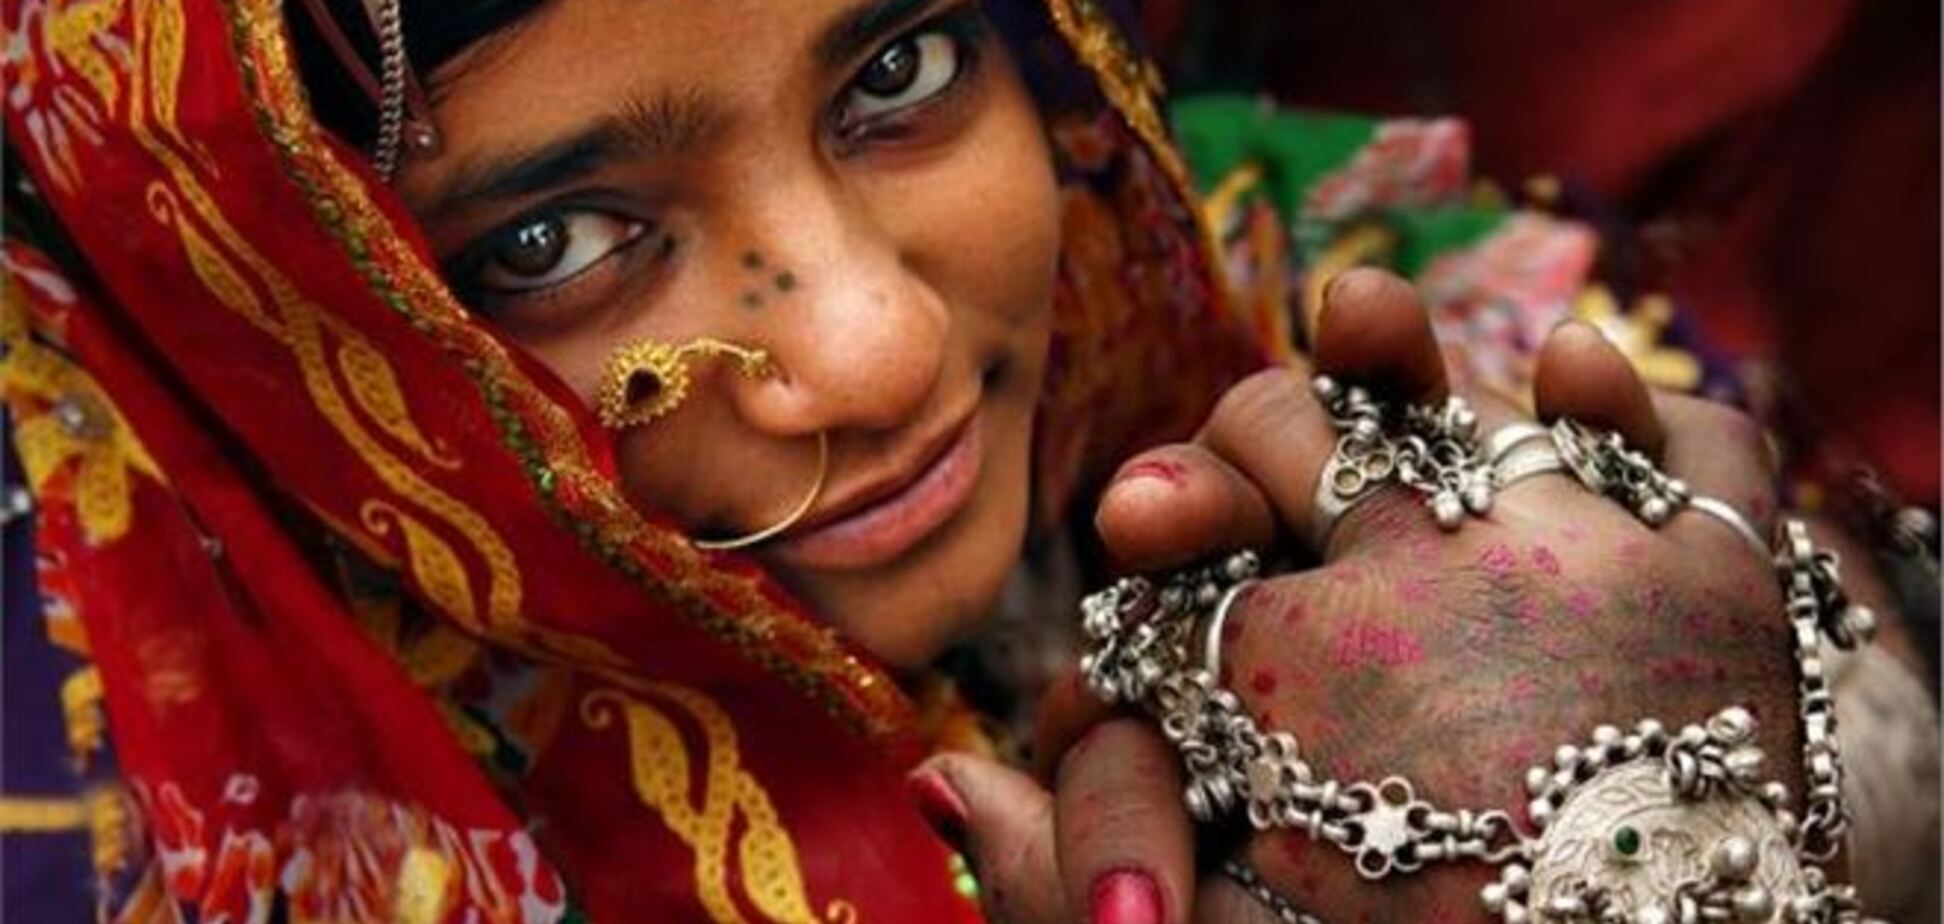  В Индии каждый час из-за приданого убивают женщину - правозащитники